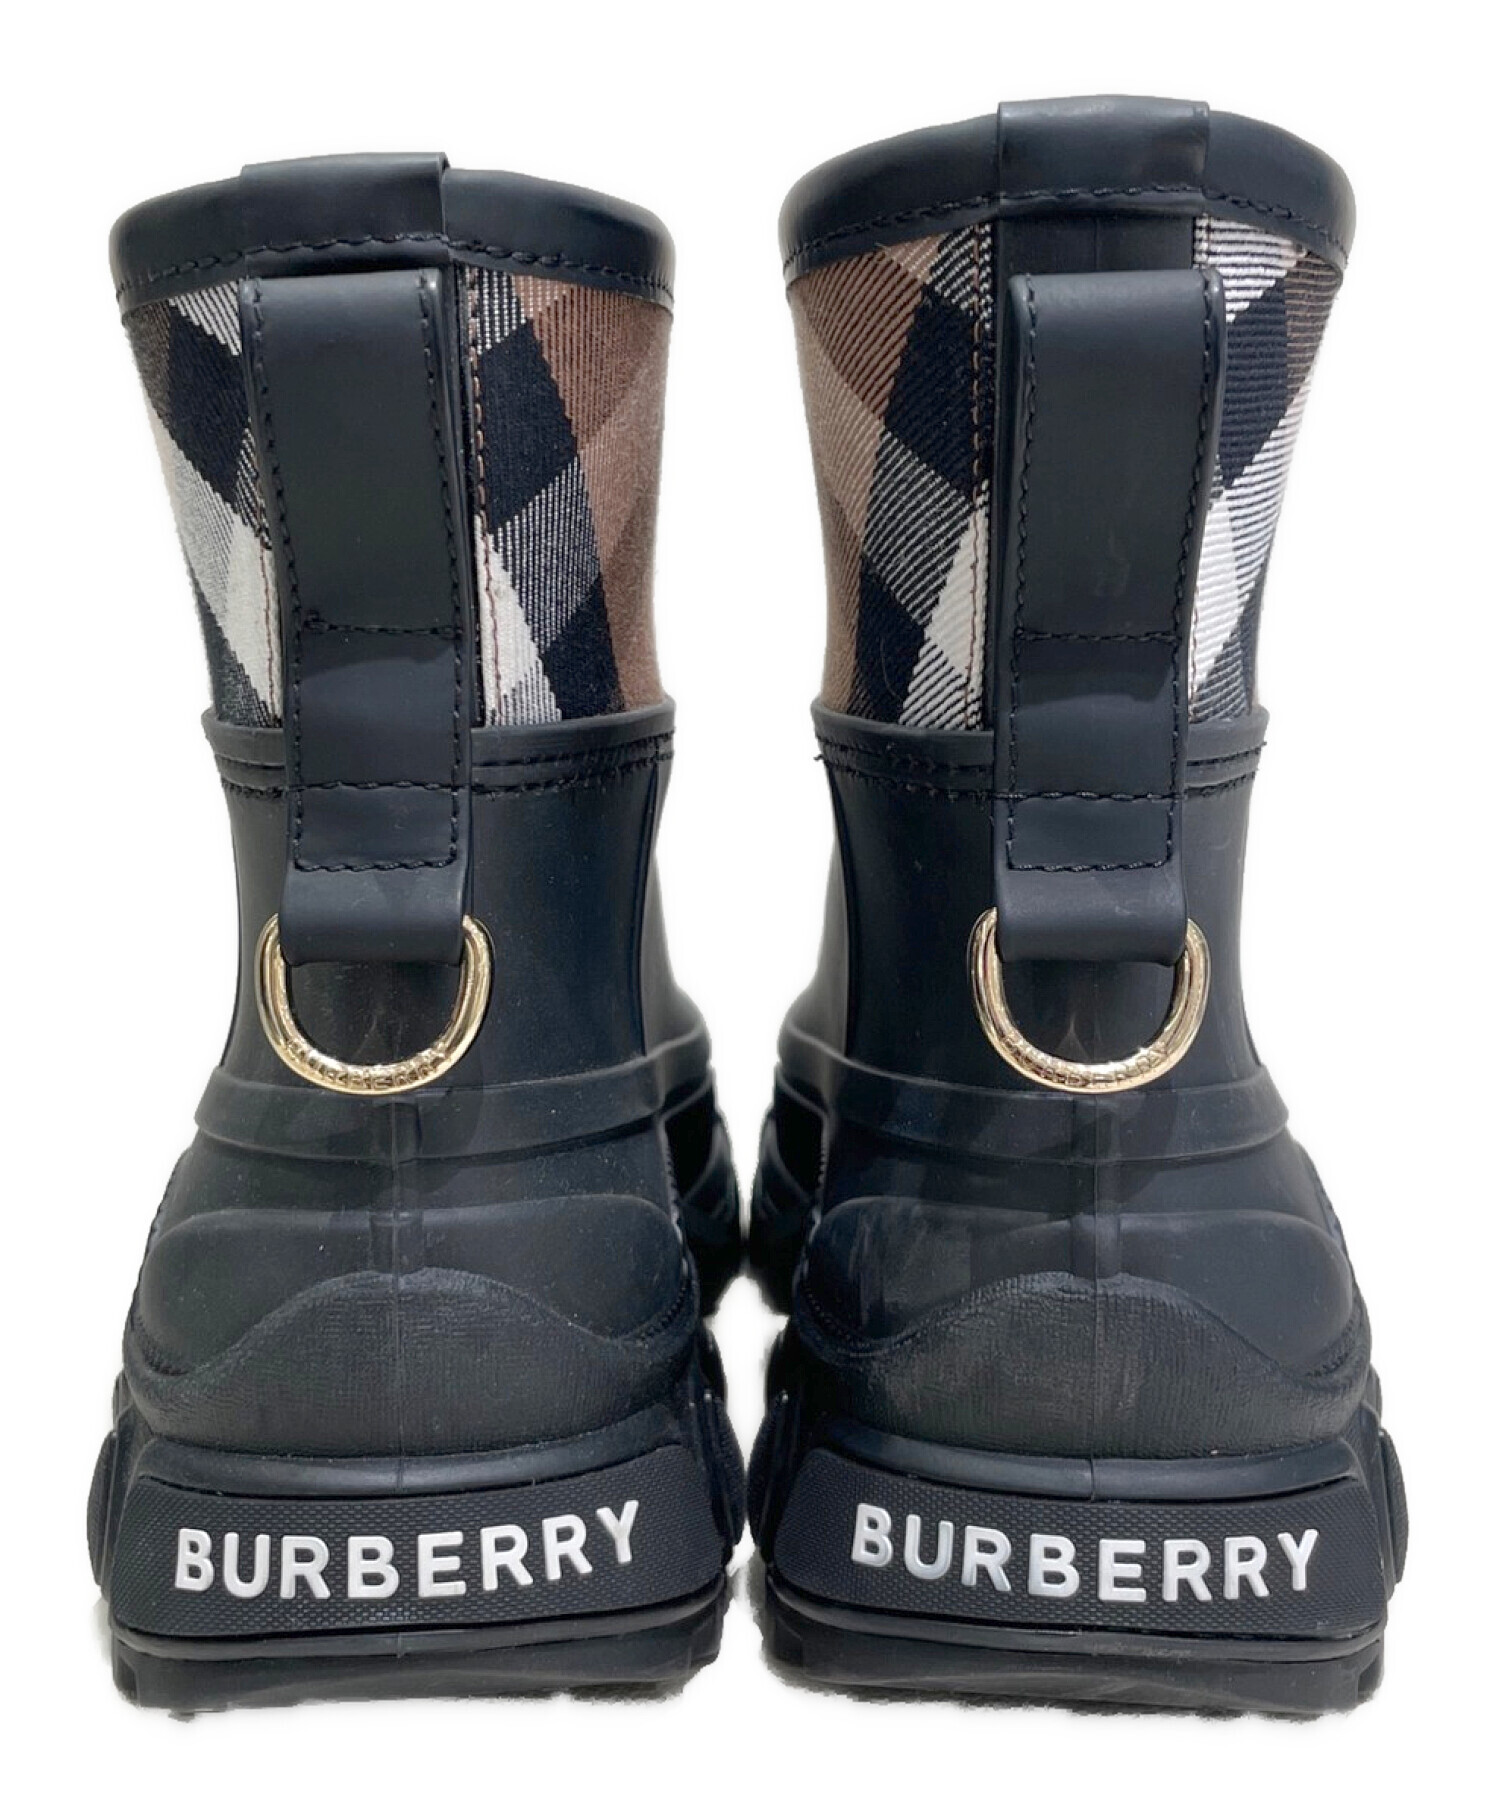 BURBERRY (バーバリー) レインブーツ ブラック サイズ:38